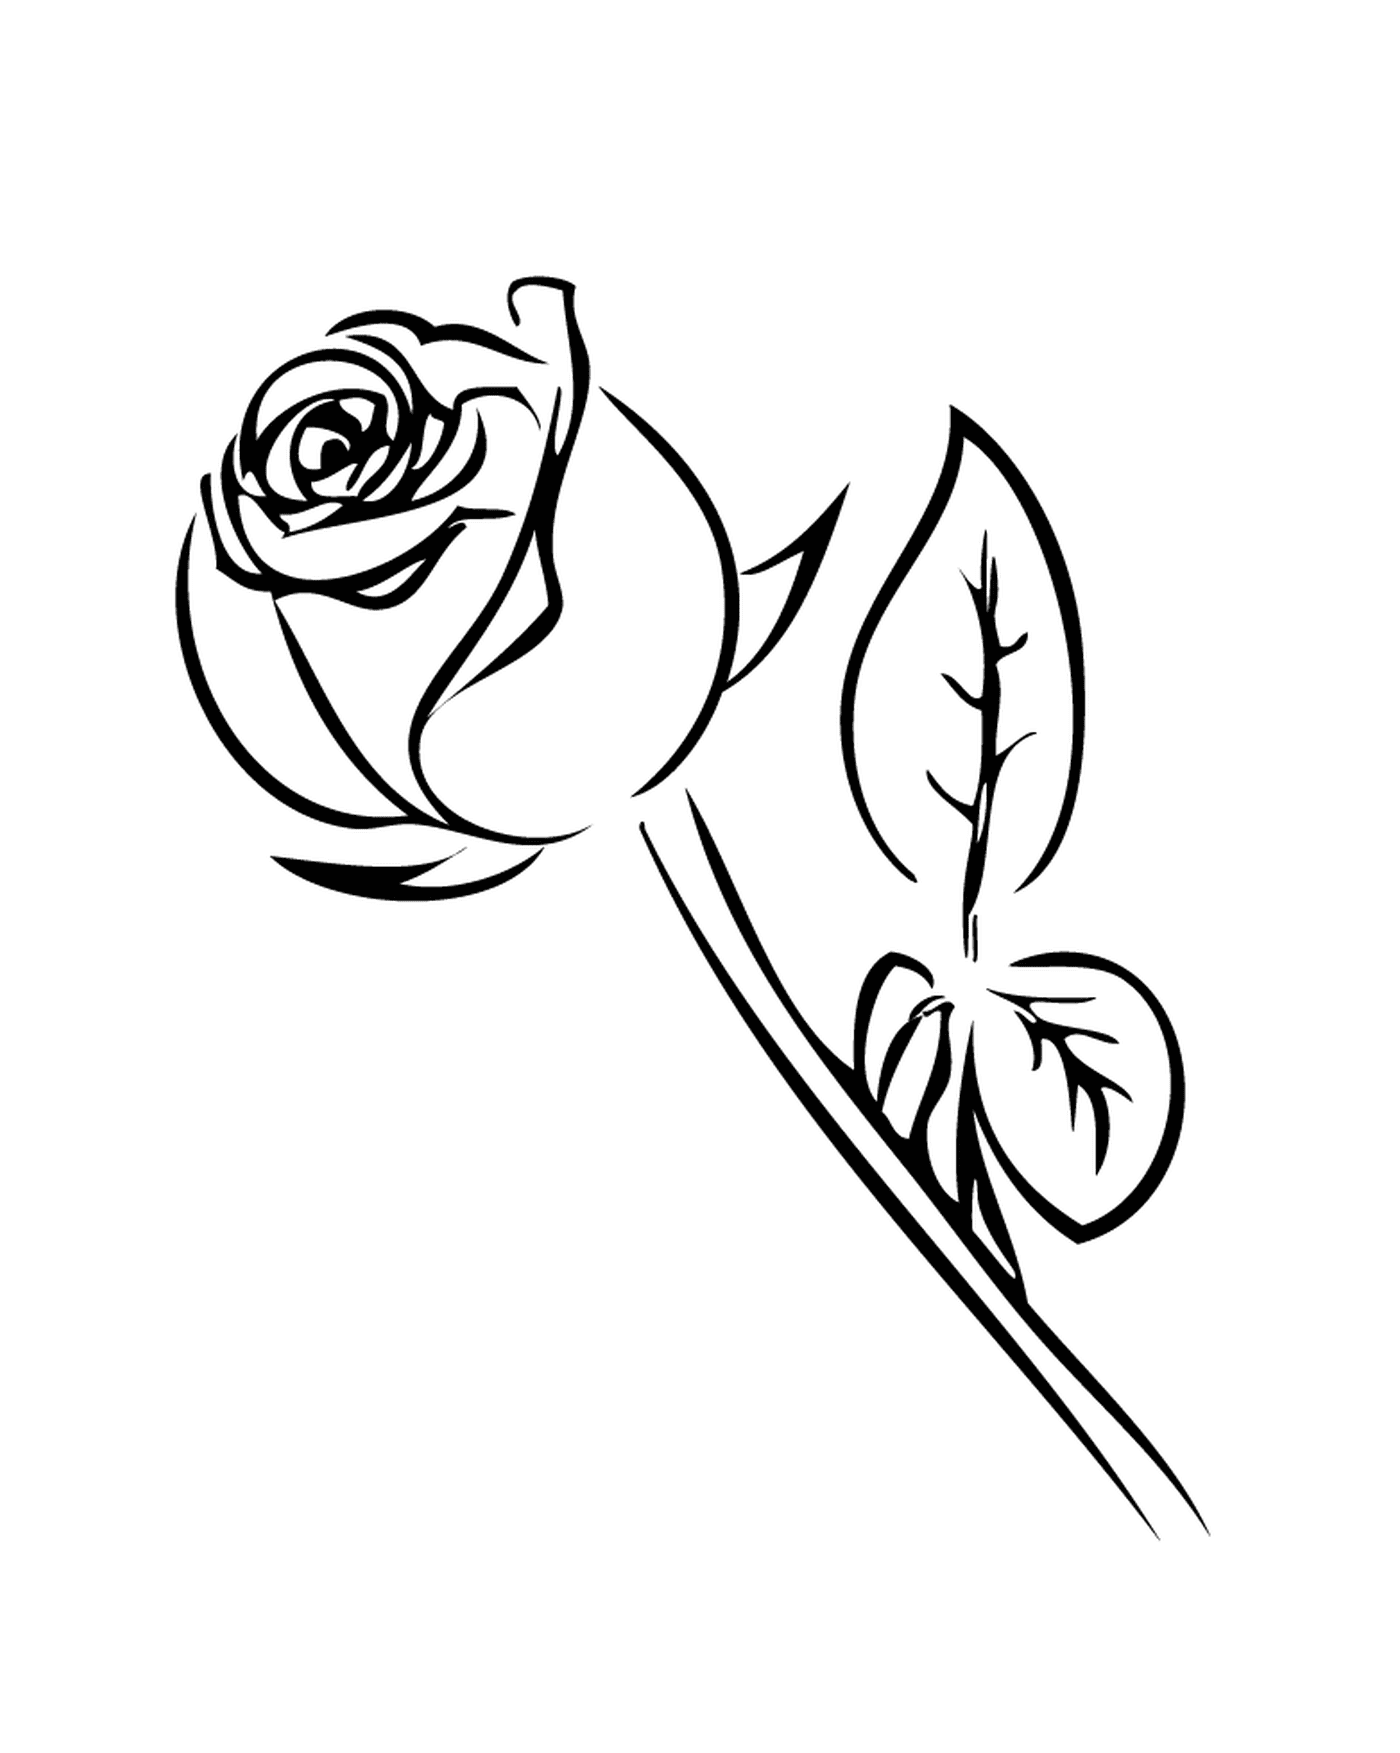  Rosa in bianco e nero 